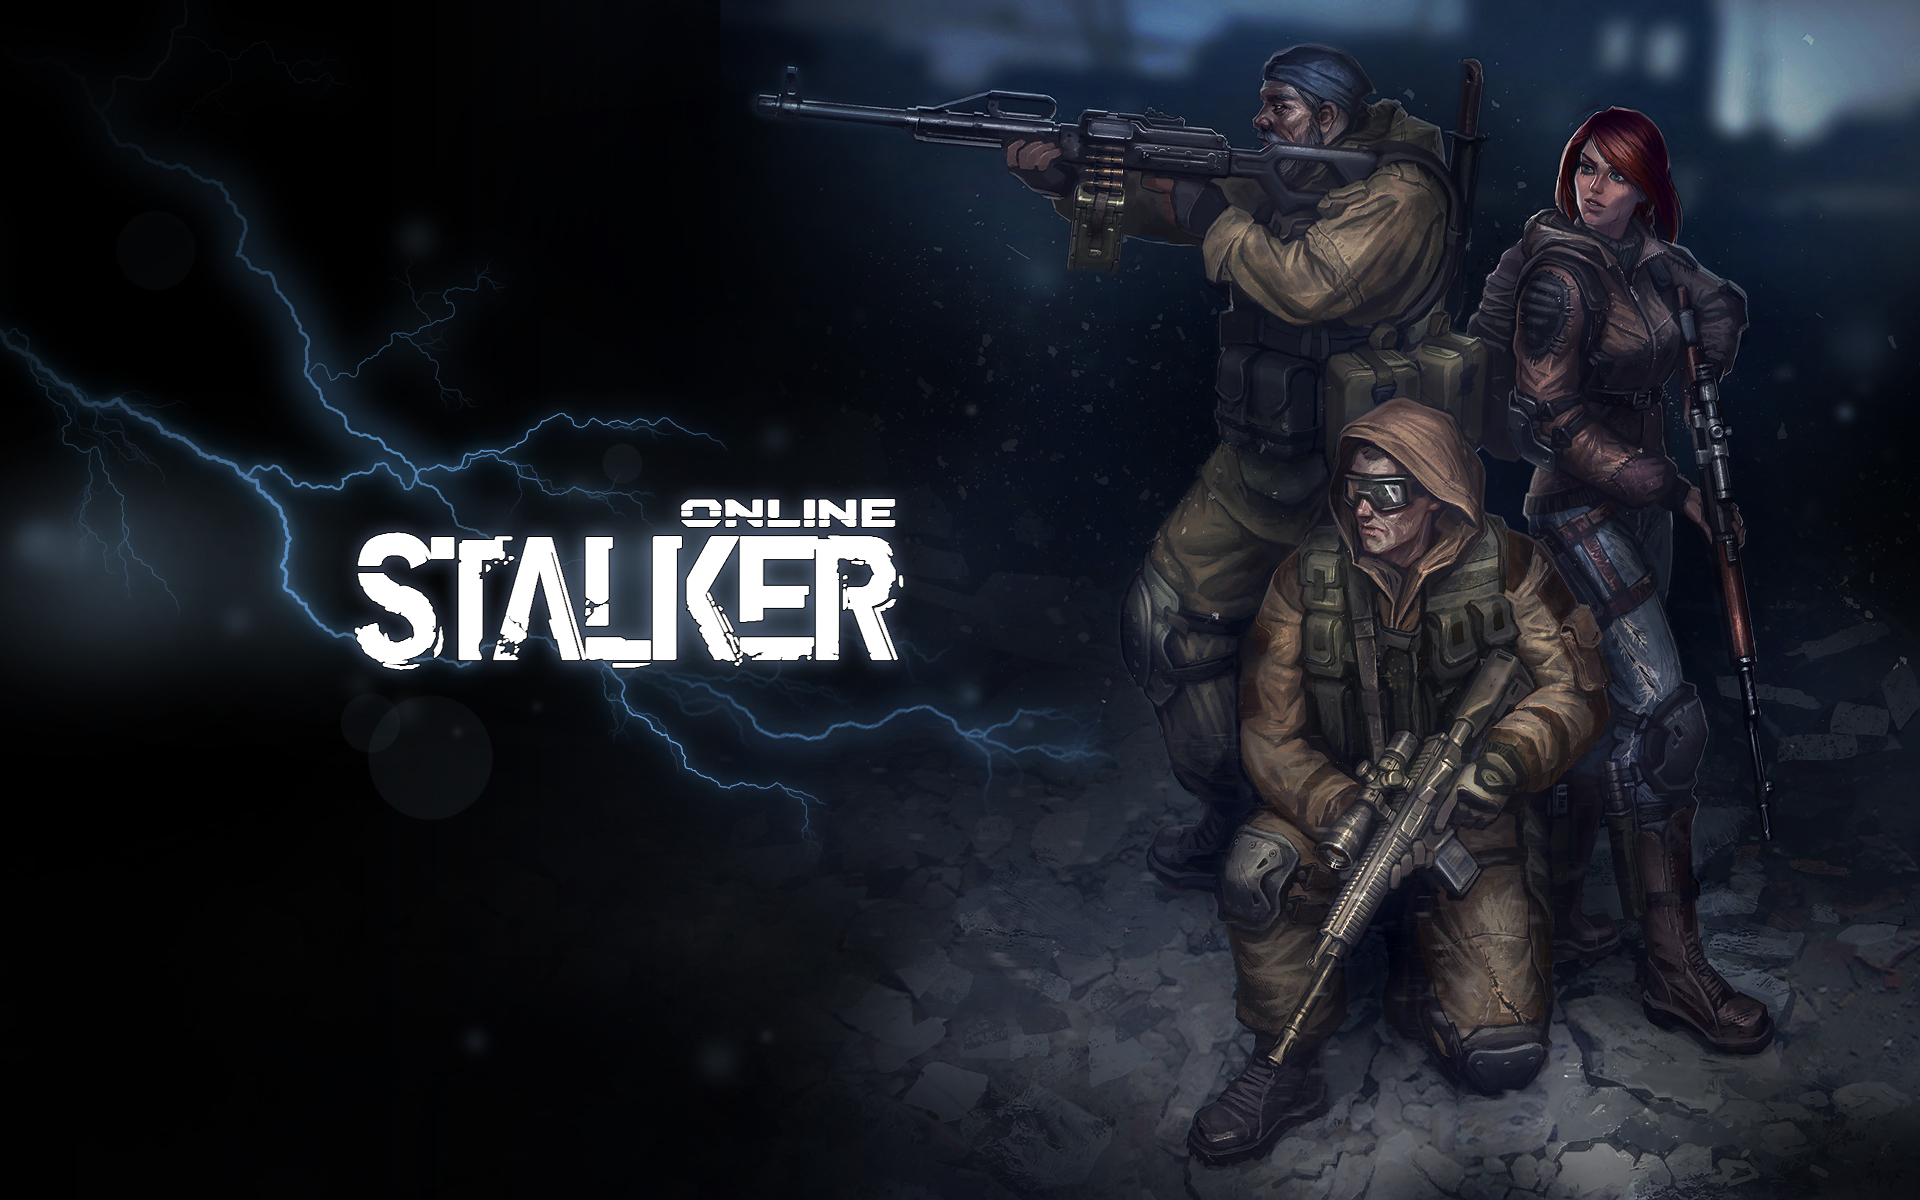 受 浩劫殺陣 啟發線上遊戲 Stalker Online 今年秋季將在steam 平台推出 Stalker Online 巴哈姆特